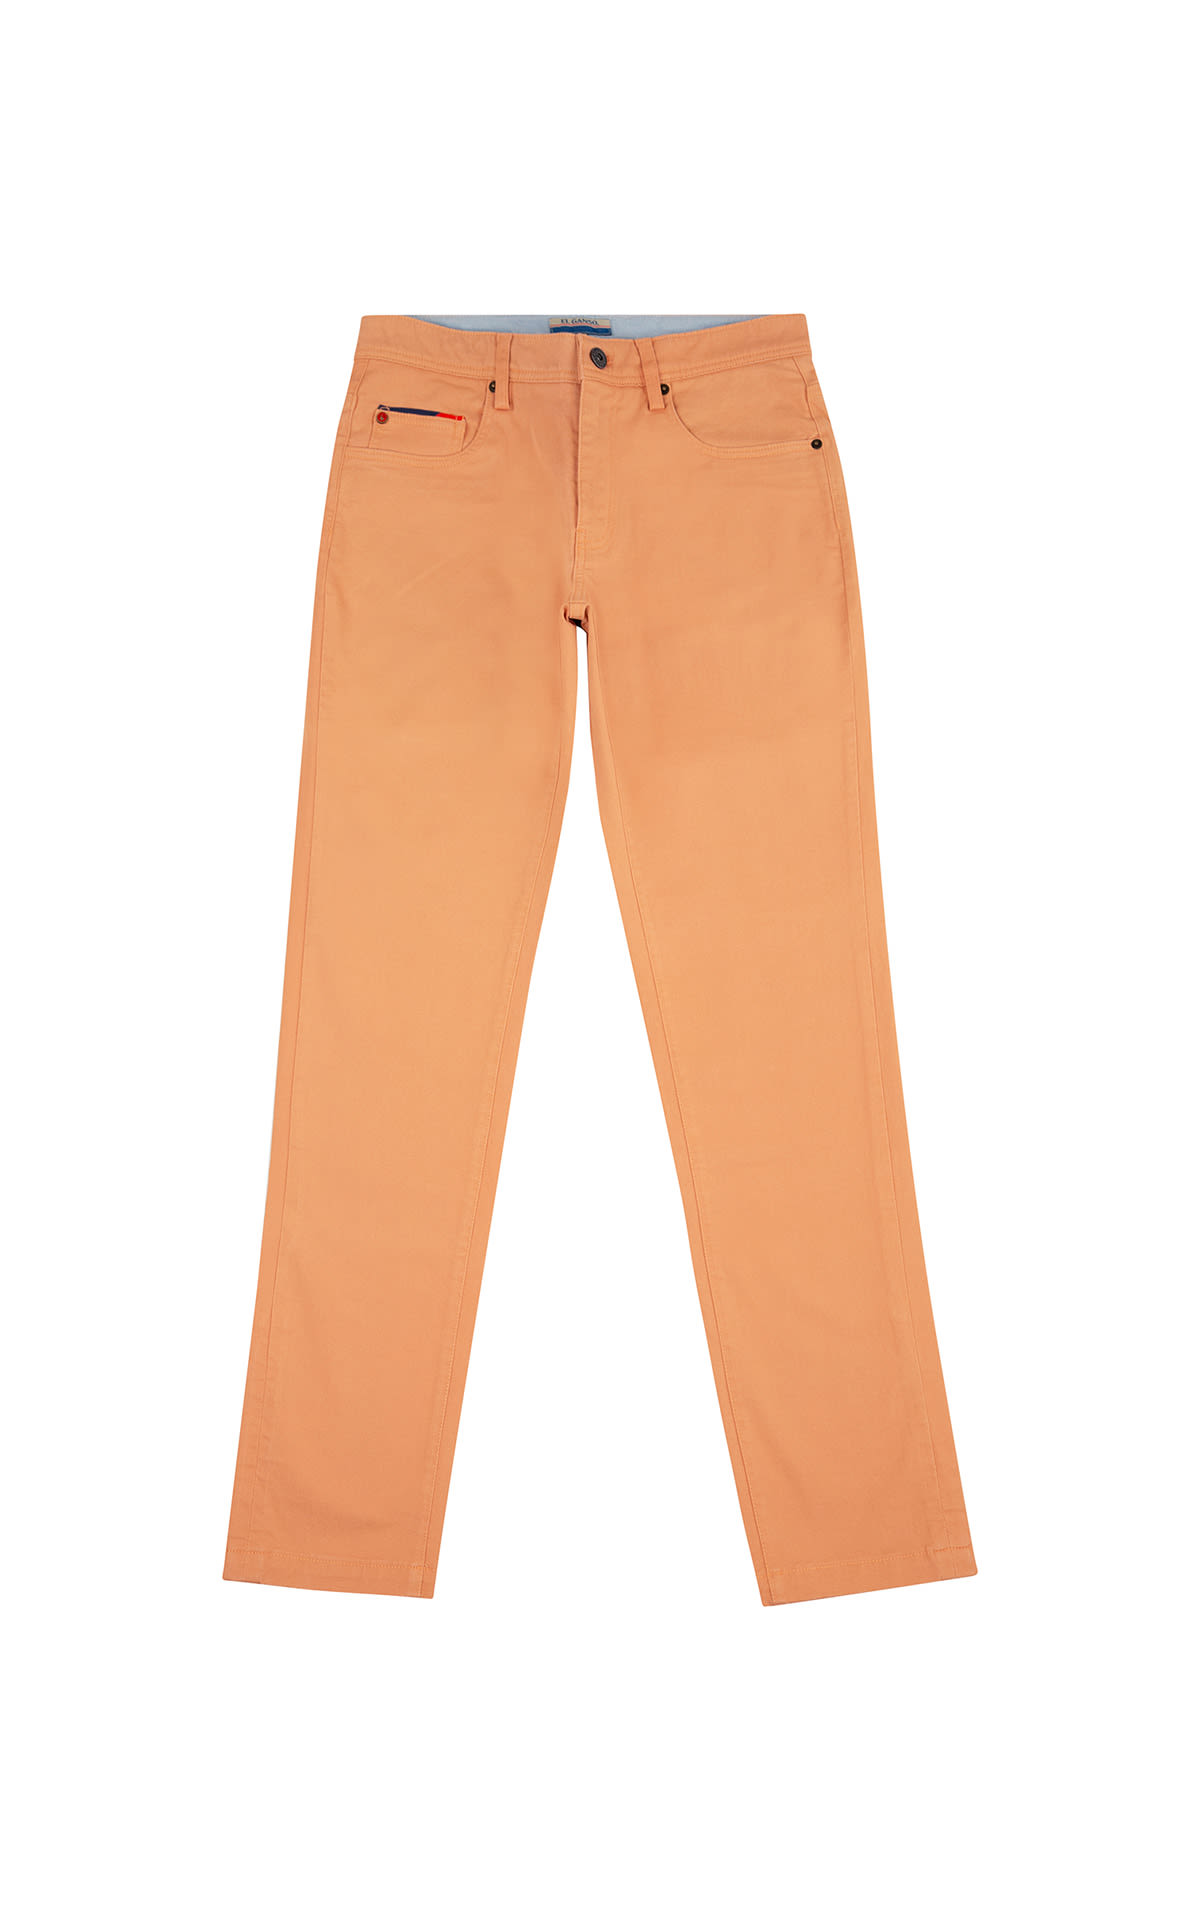 Pantalones tejanos naranjas de El Ganso